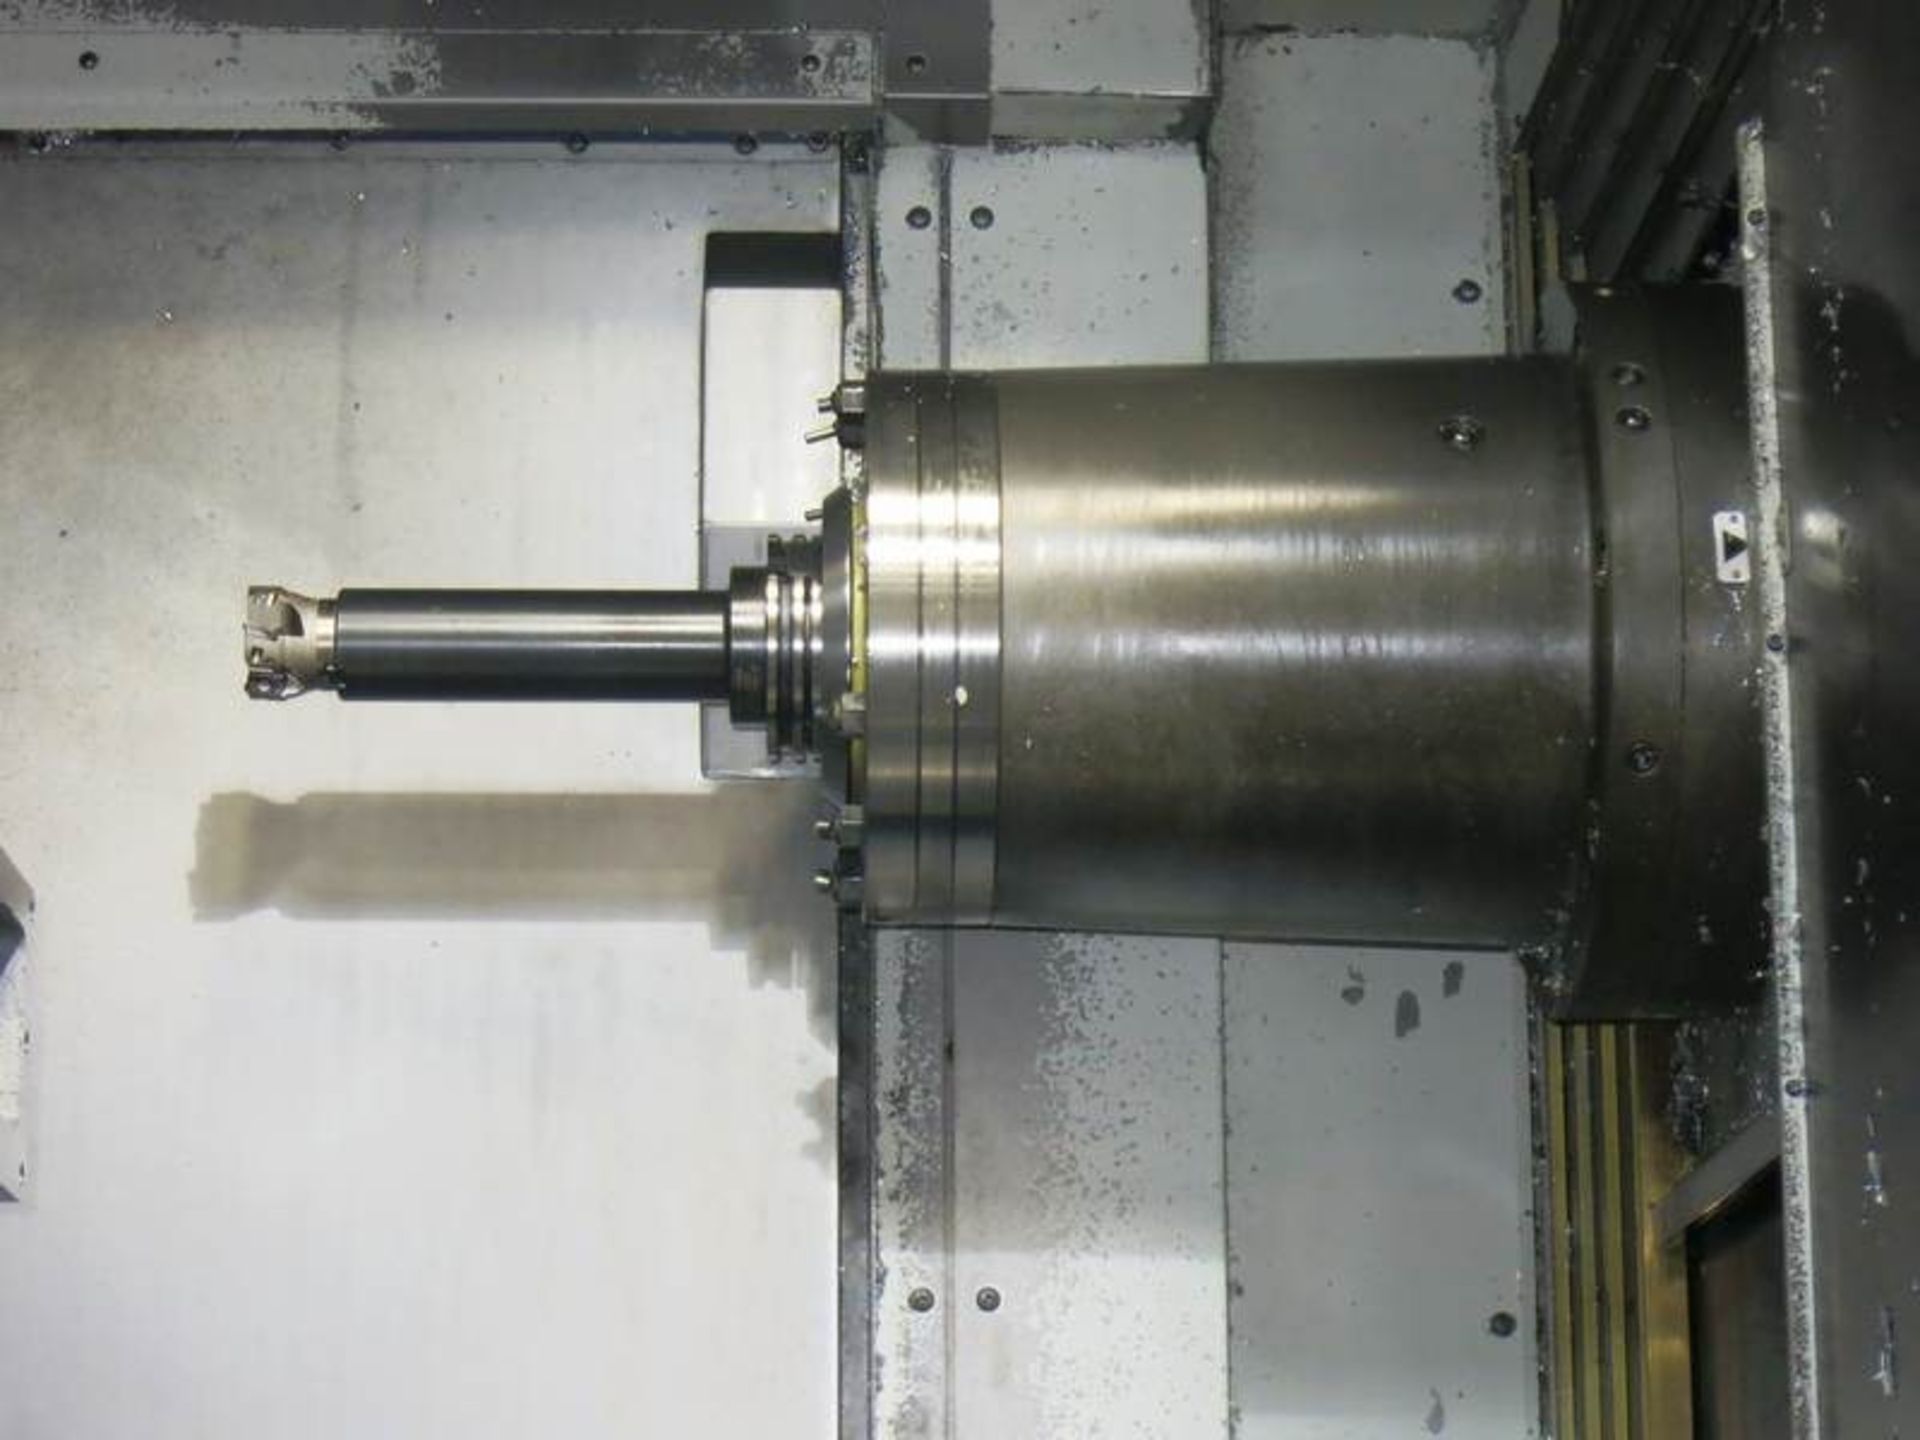 OKK MODEL HM1008 CNC LARGE CAPACITY HORIZONTAL MACHINING CENTER, S/N 157, NEW 2004 - Image 10 of 12